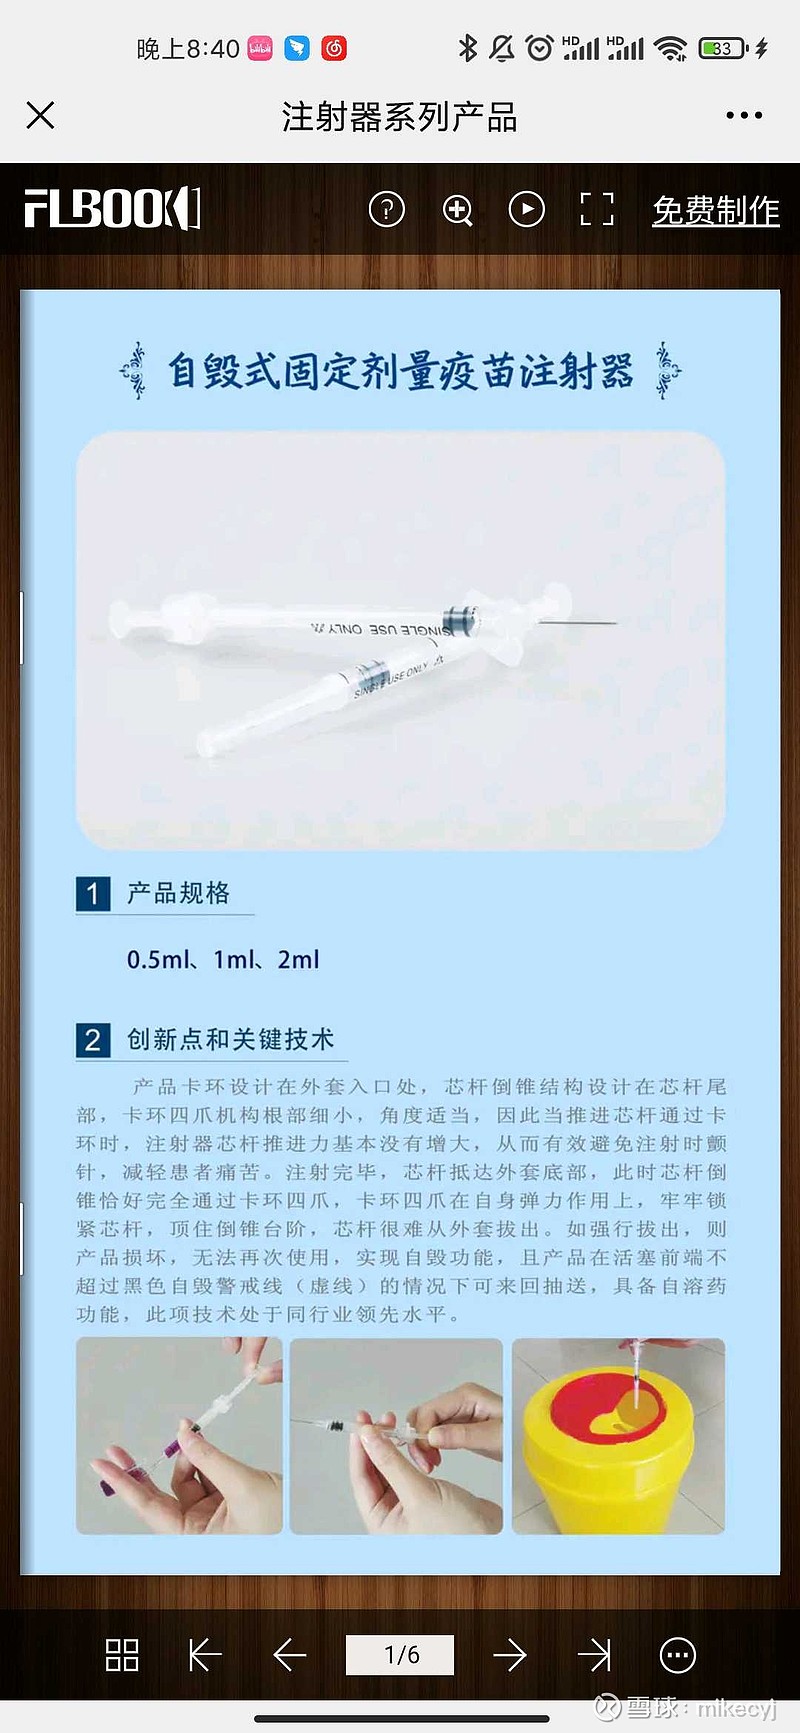 全国6张疫苗注射器牌照 三鑫医